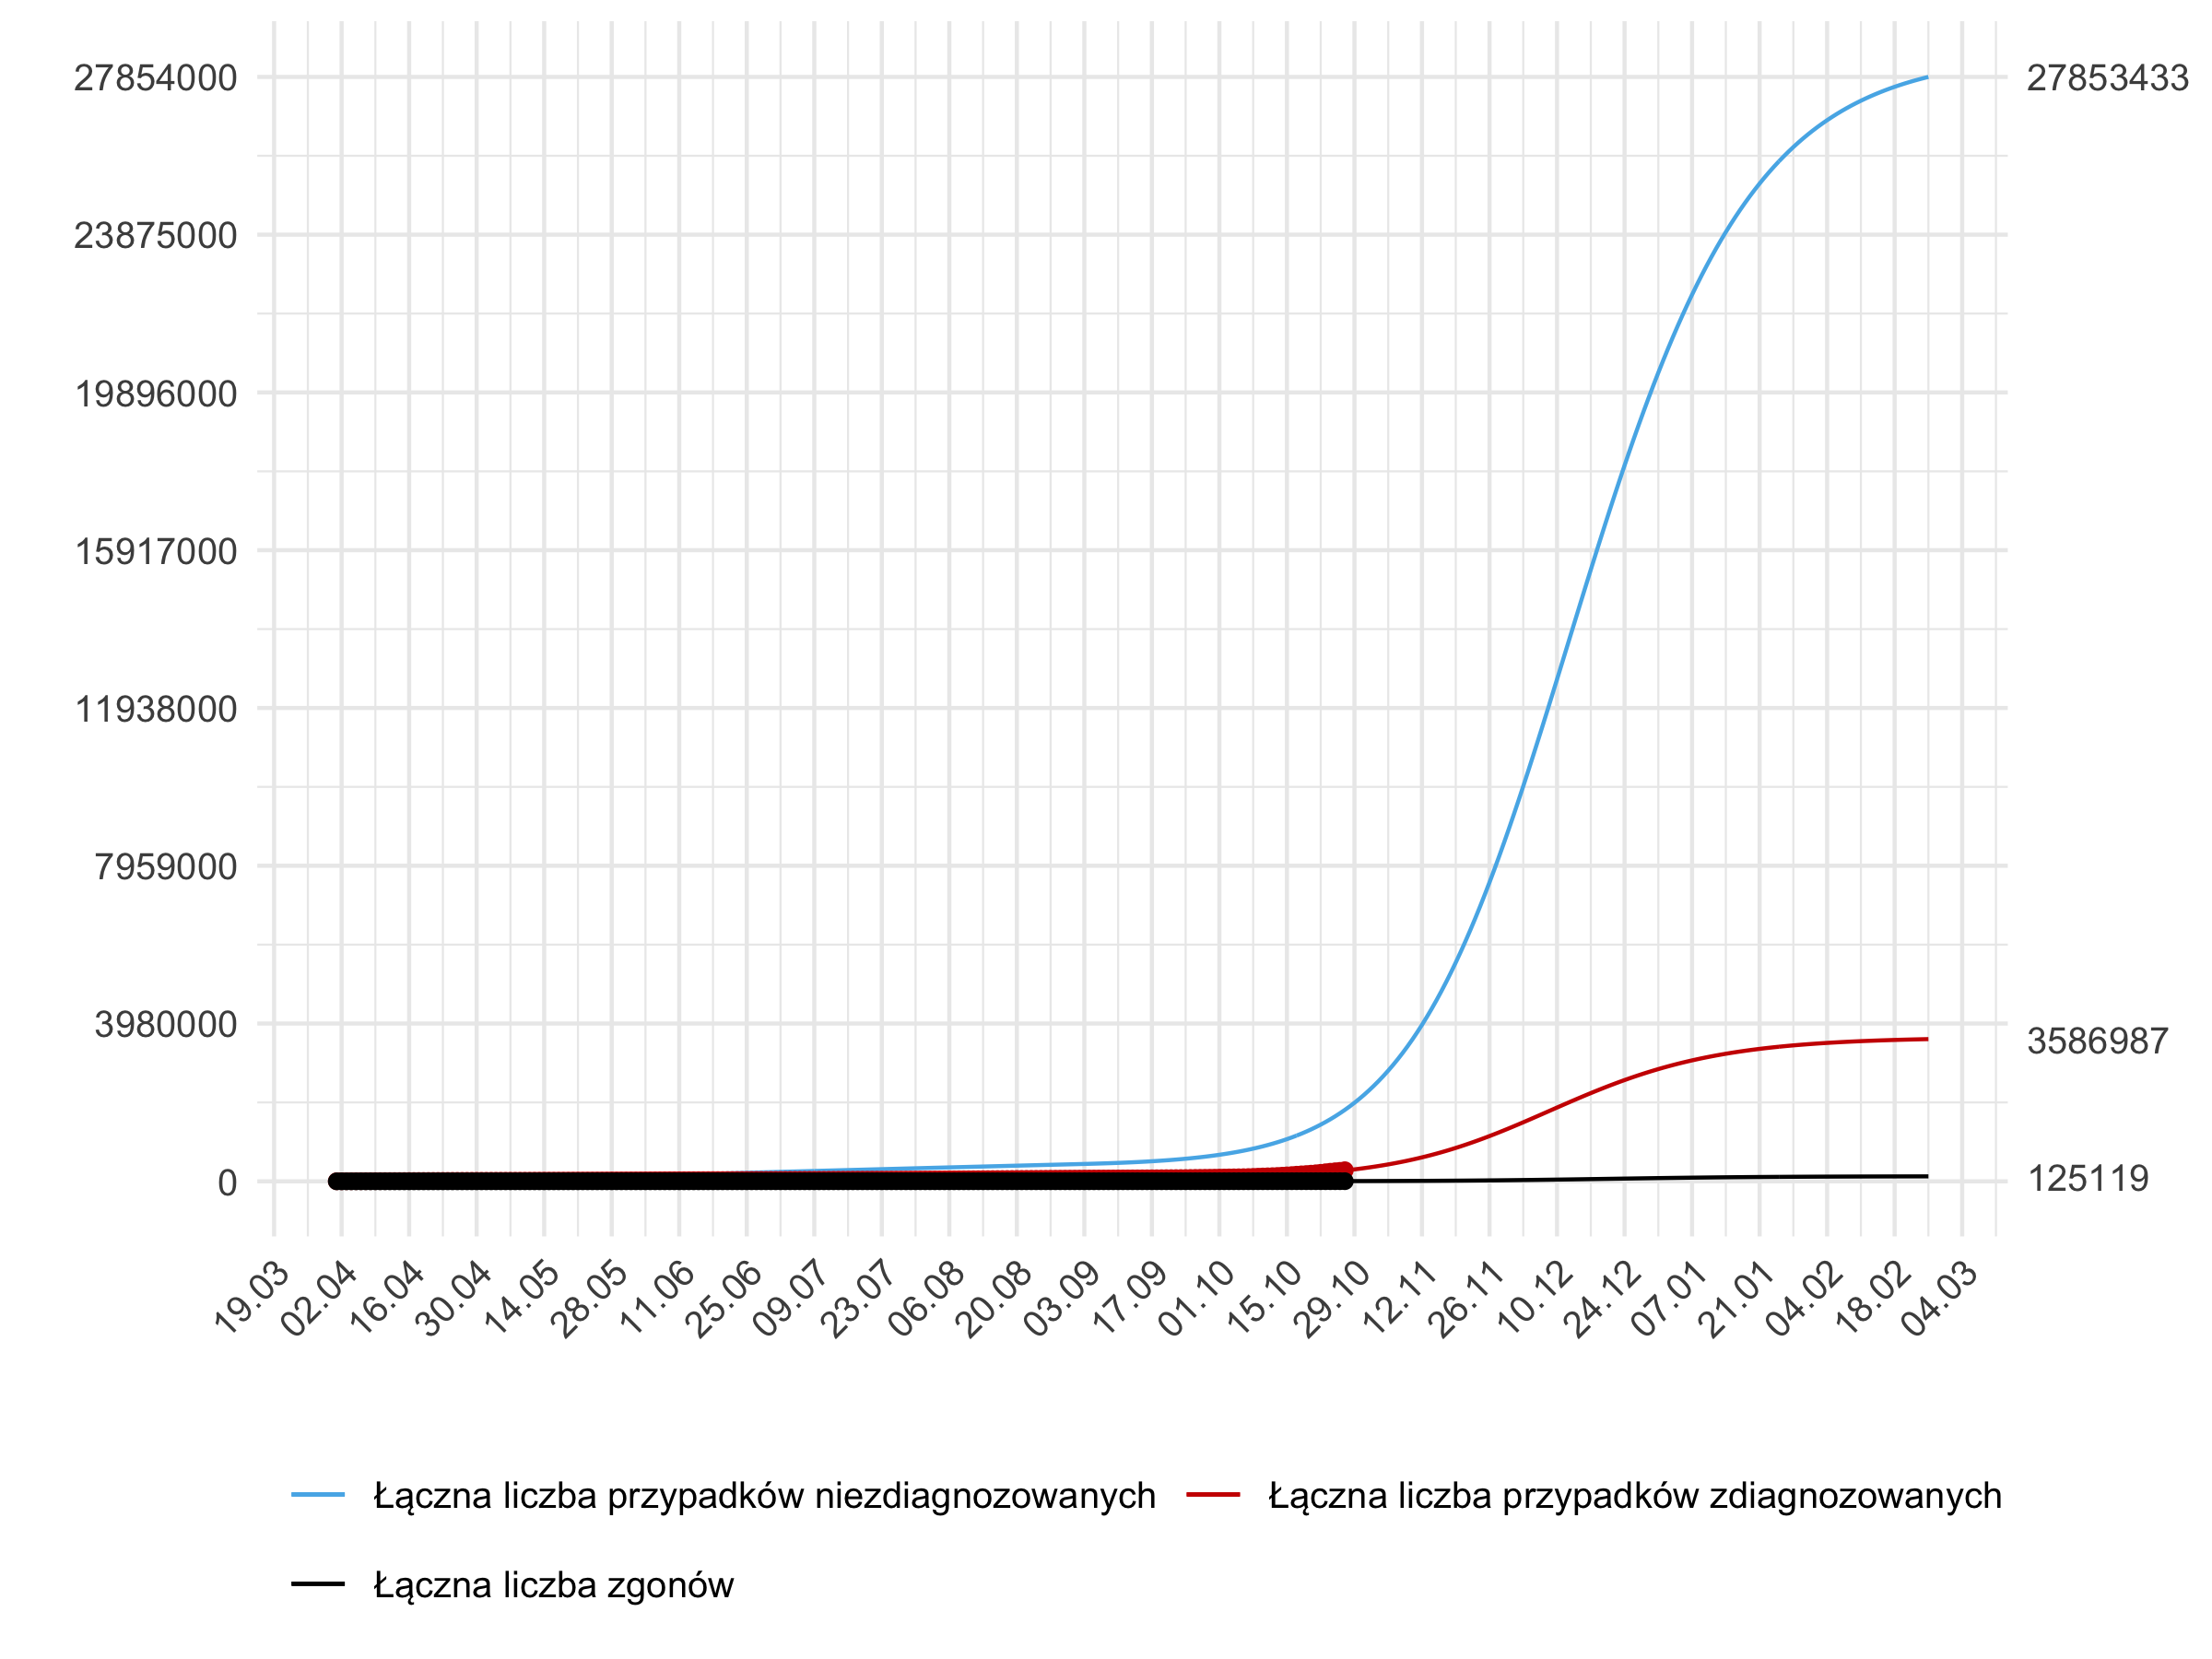 Długoterminowa prognoza łącznej liczby rozpoznań zdiagnozowanych (czerwona linia) i niezdiagnozowanych (niebieska) w modelu stochastycznym.